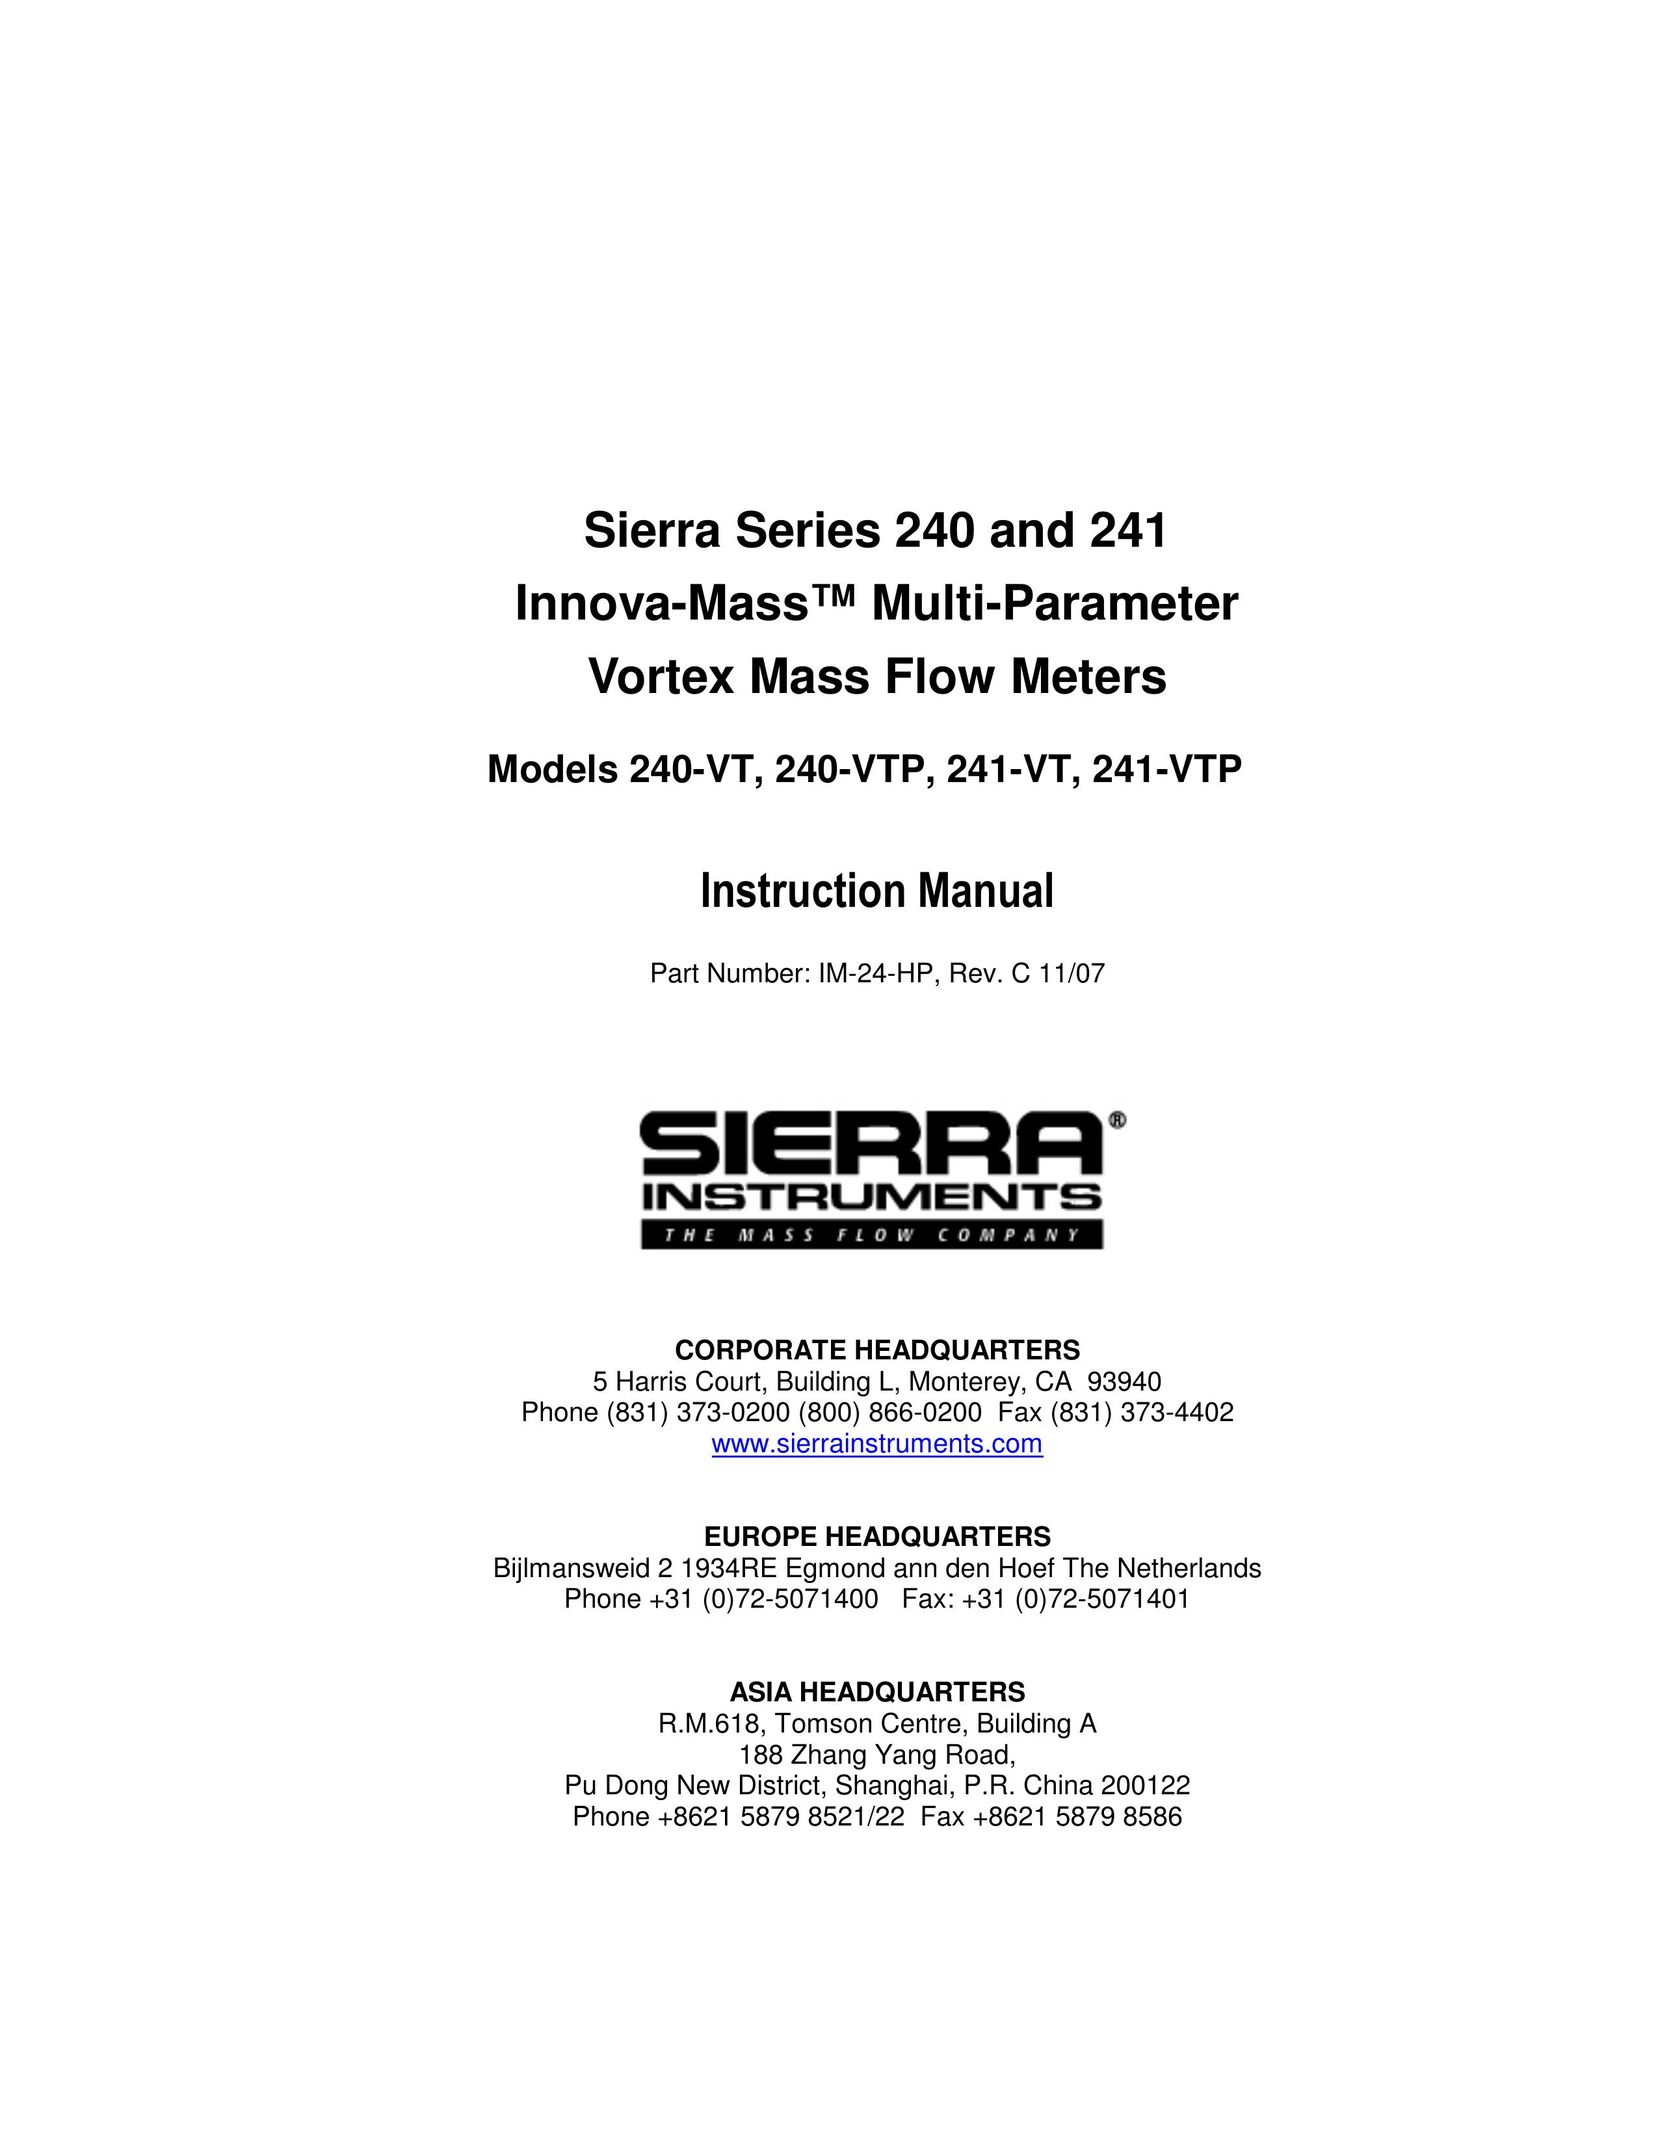 Sierra 241-VTP Network Router User Manual